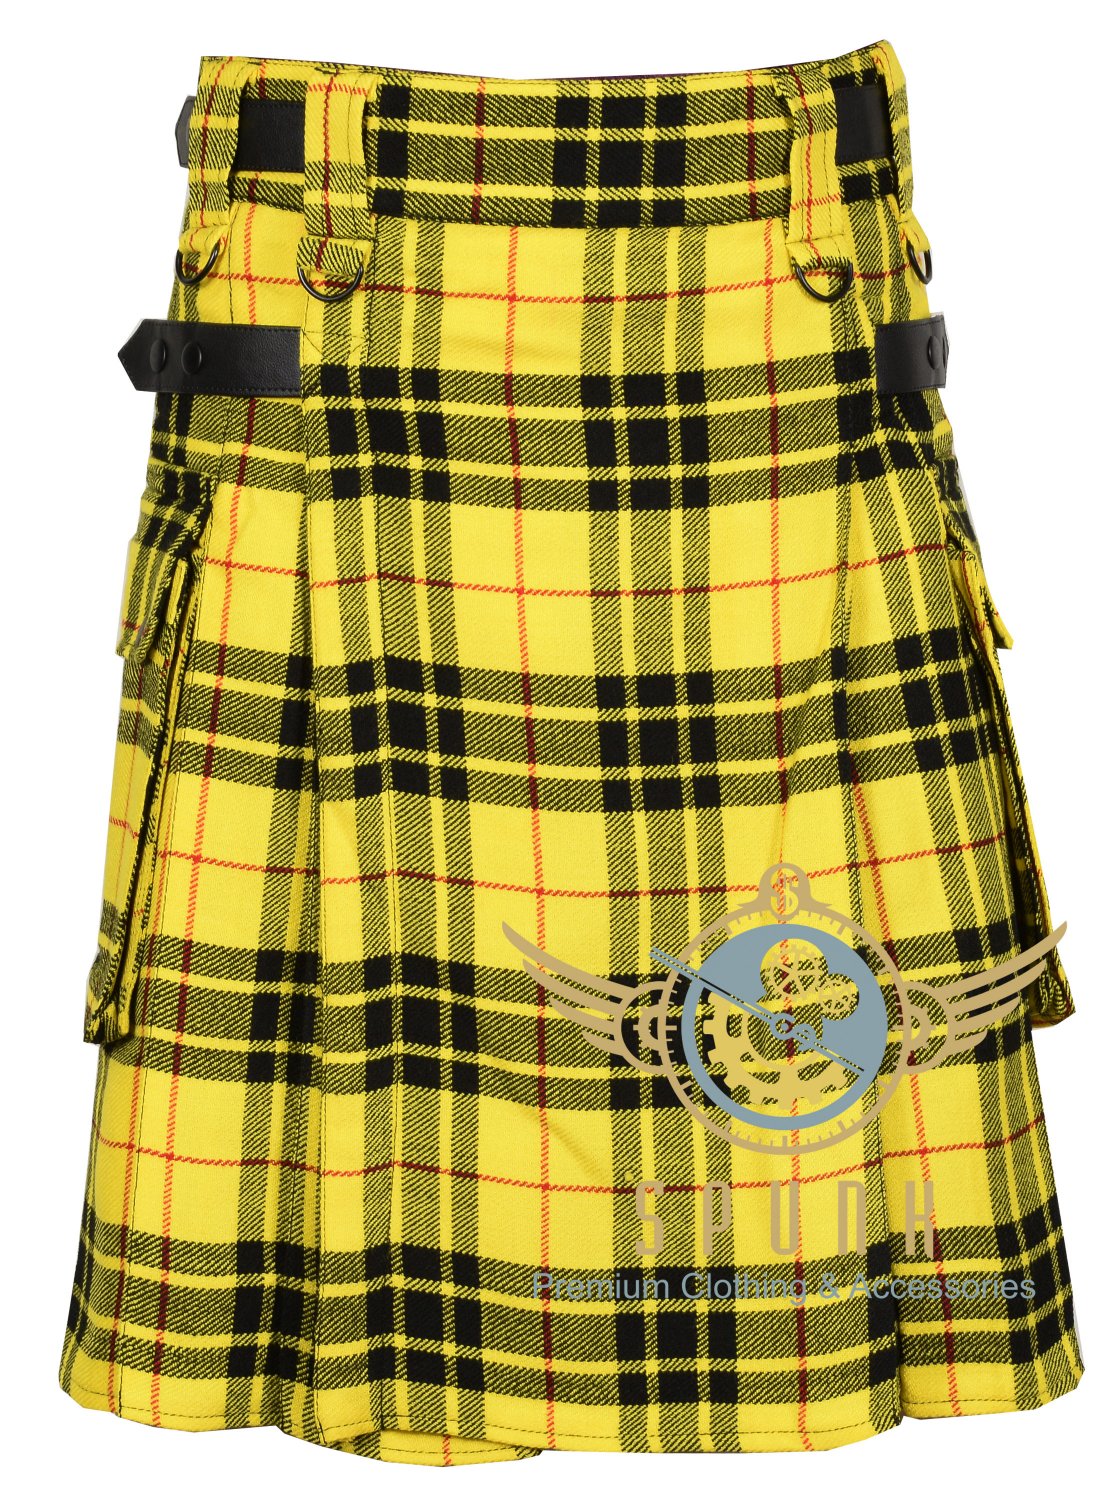 Scottish Men's Modern Macleod of Lewis utility kilt - 2 Cargo Pockets Kilt